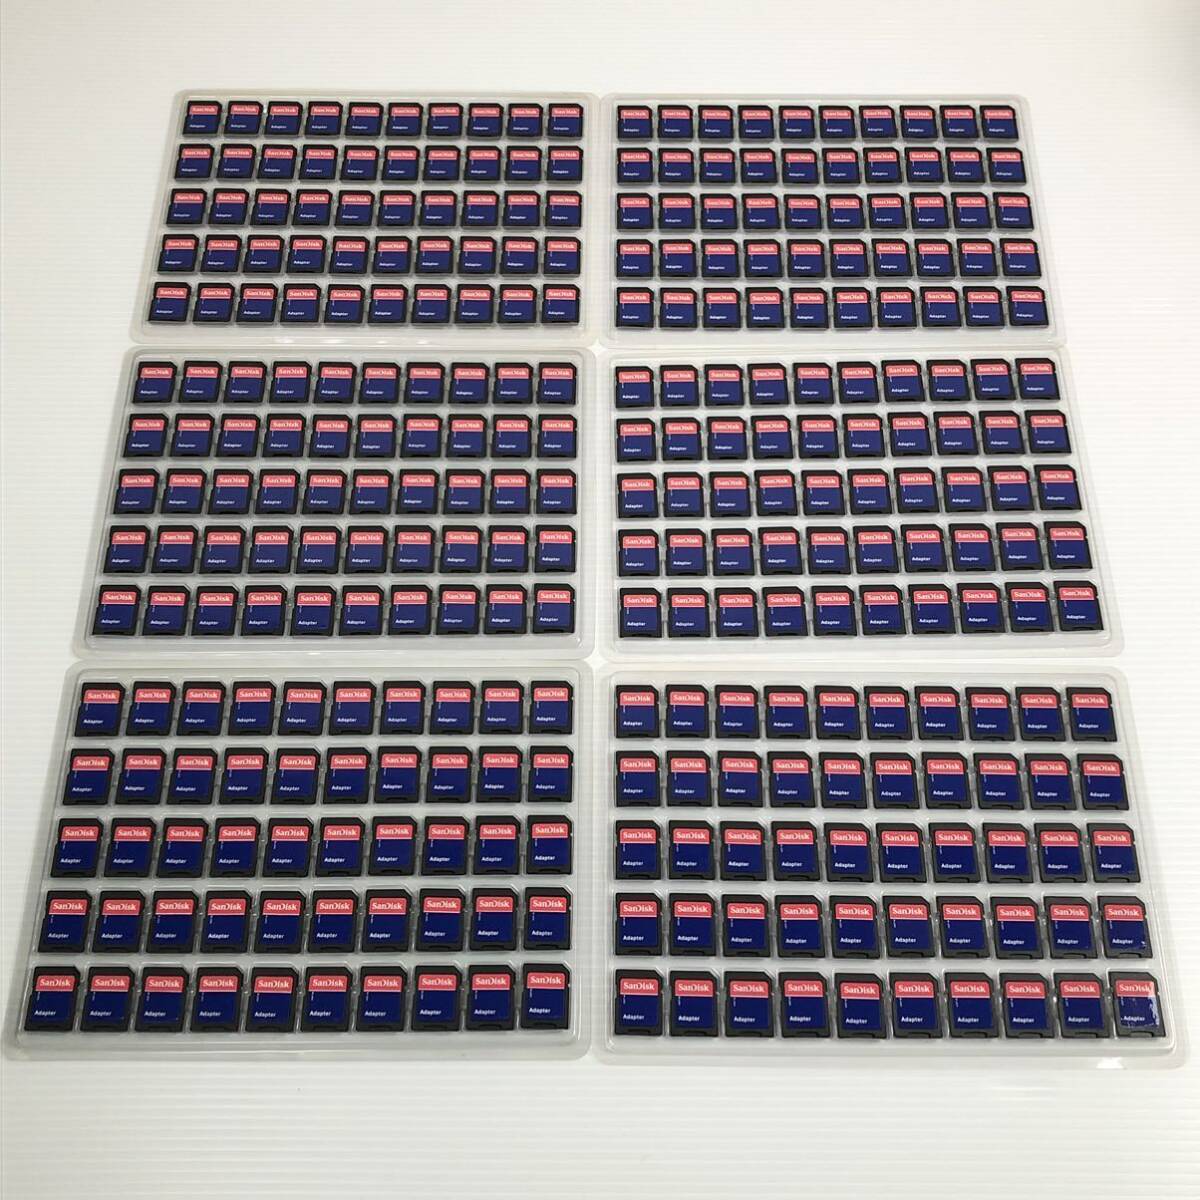 SanDisk マイクロSD変換アダプター 300枚まとめ売り MicroSD 変換 アダプター Adapter_画像1